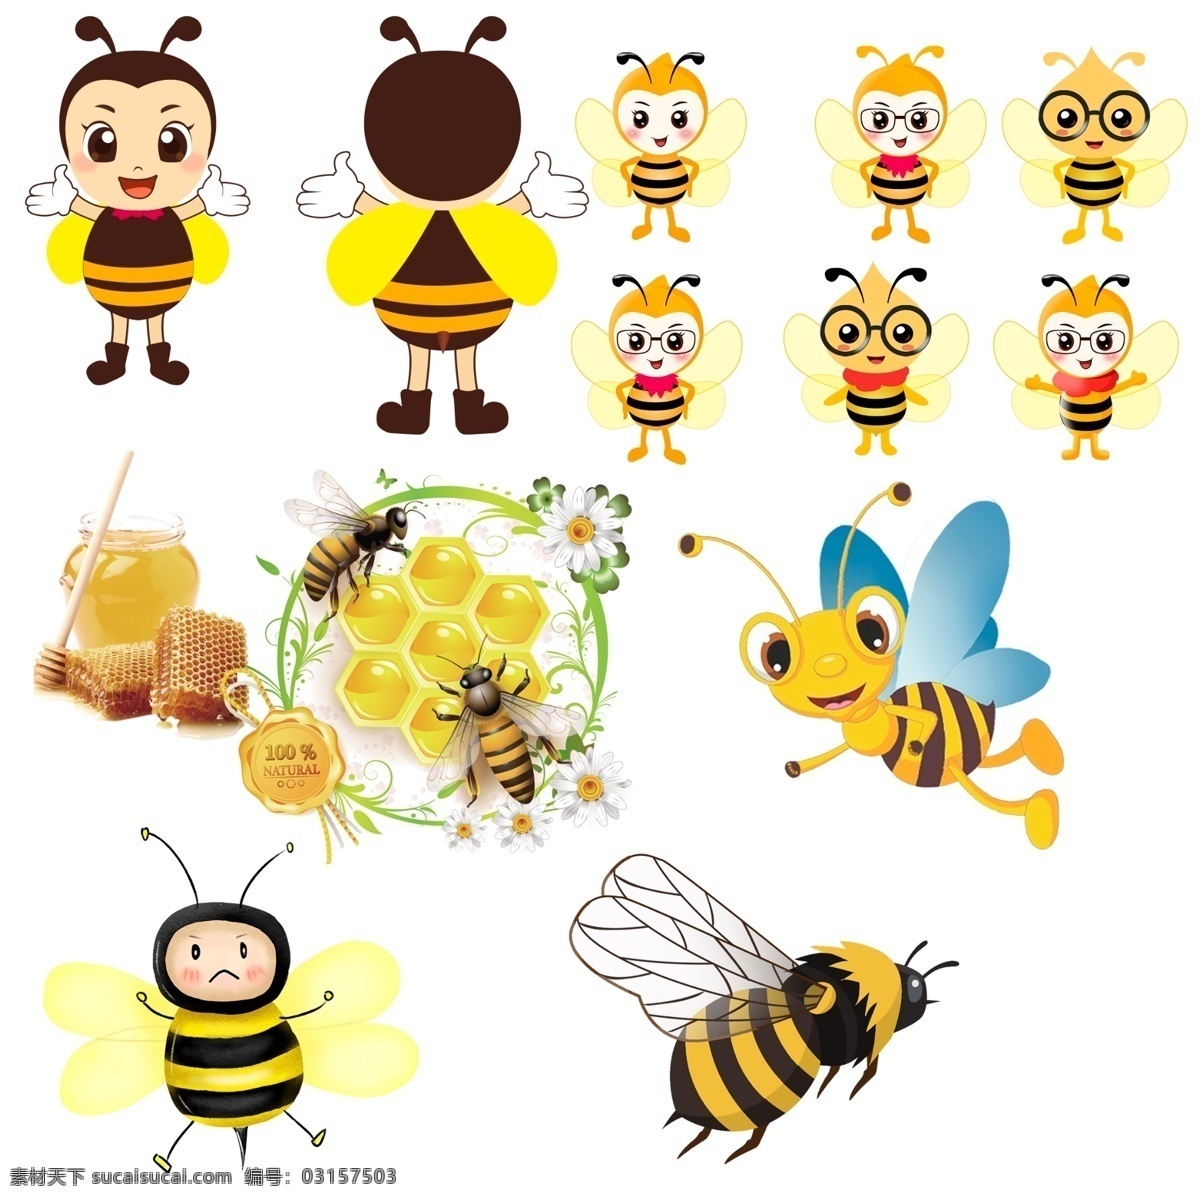 卡通蜜蜂 矢量图蜜蜂 黄蜂 工蜂 大黄蜂 翅膀 透明翅膀 生物 昆虫 动画蜜蜂 动物 勤劳的小蜜蜂 小蜜蜂 蜂蜜 蜂巢 psd分层 分层